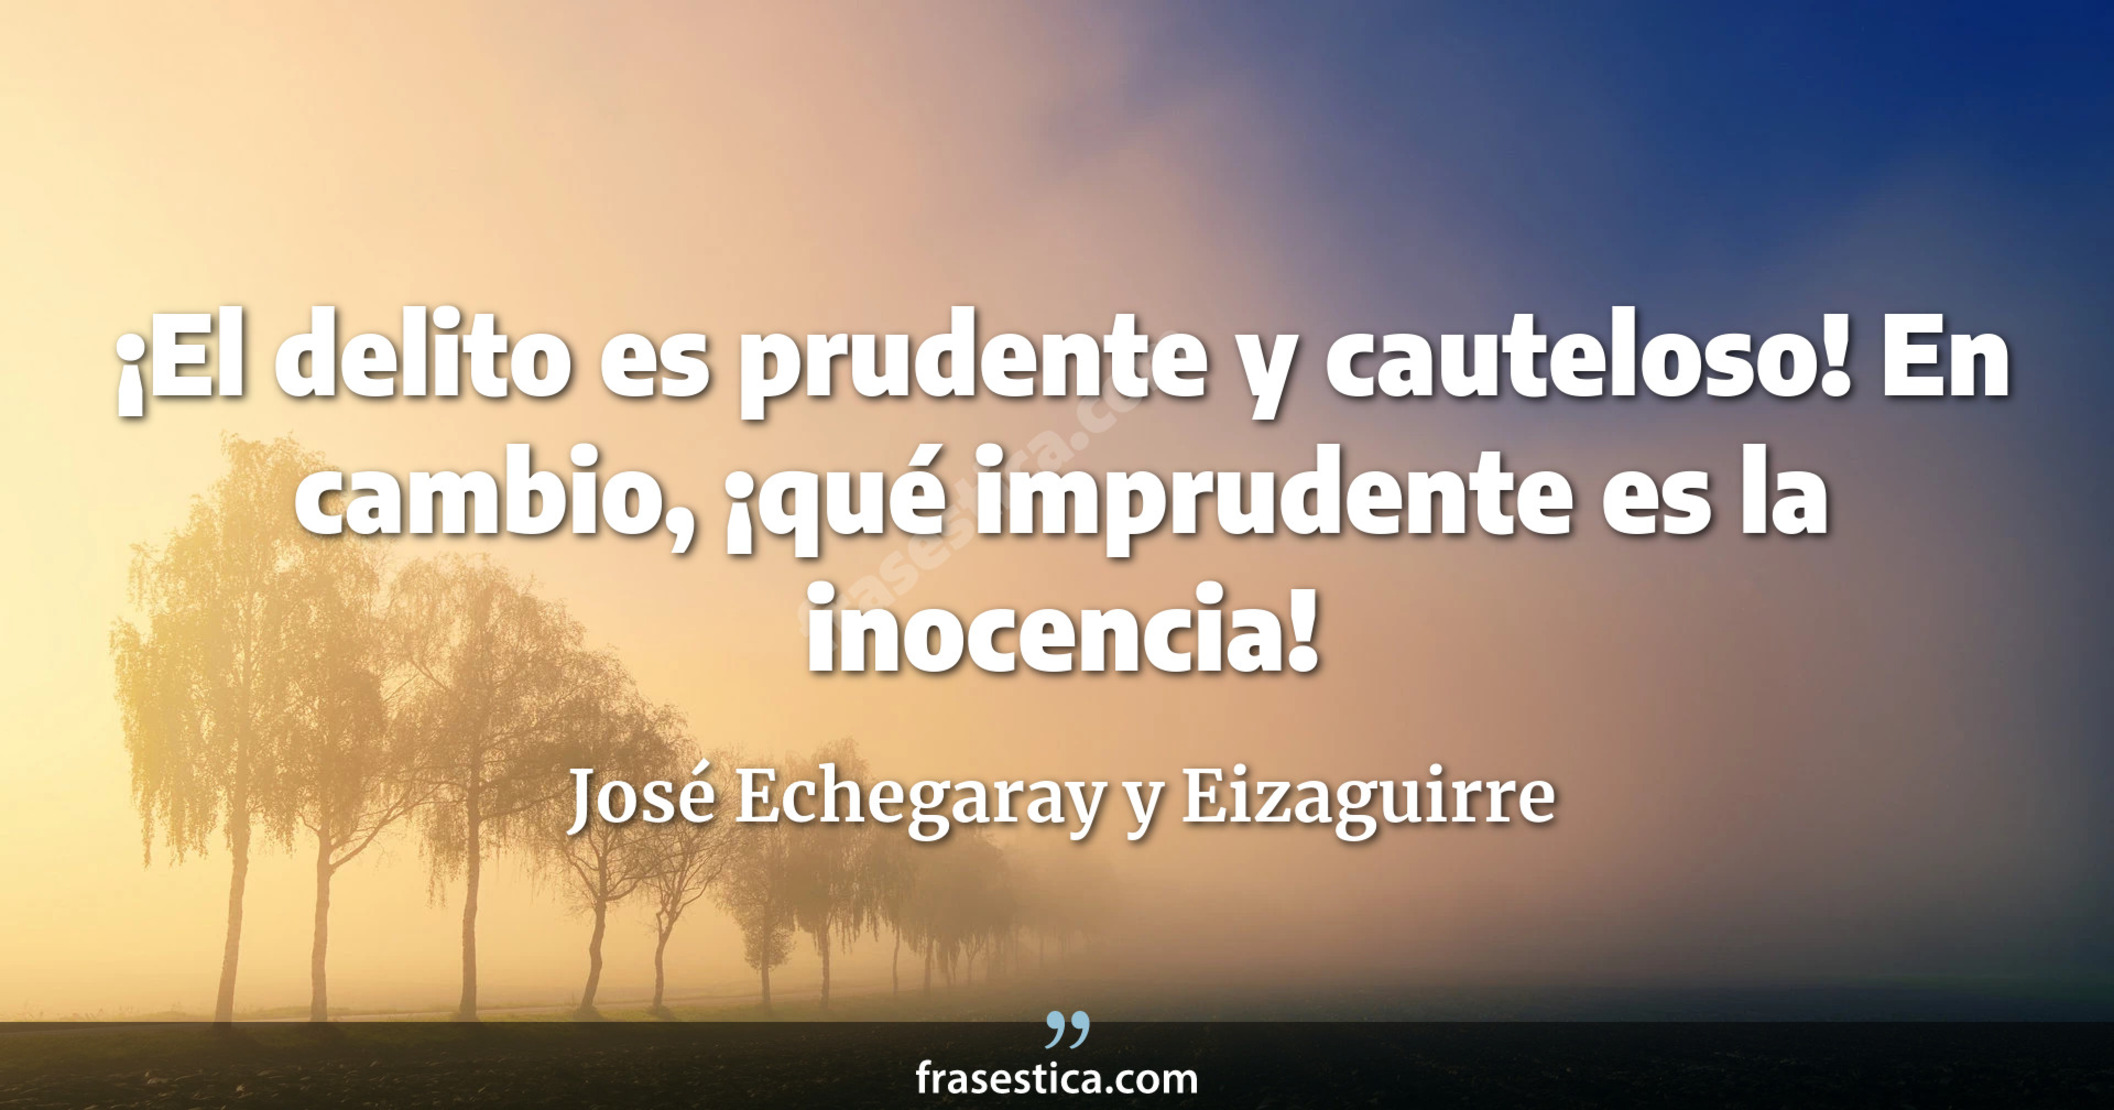 ¡El delito es prudente y cauteloso! En cambio, ¡qué imprudente es la inocencia! - José Echegaray y Eizaguirre